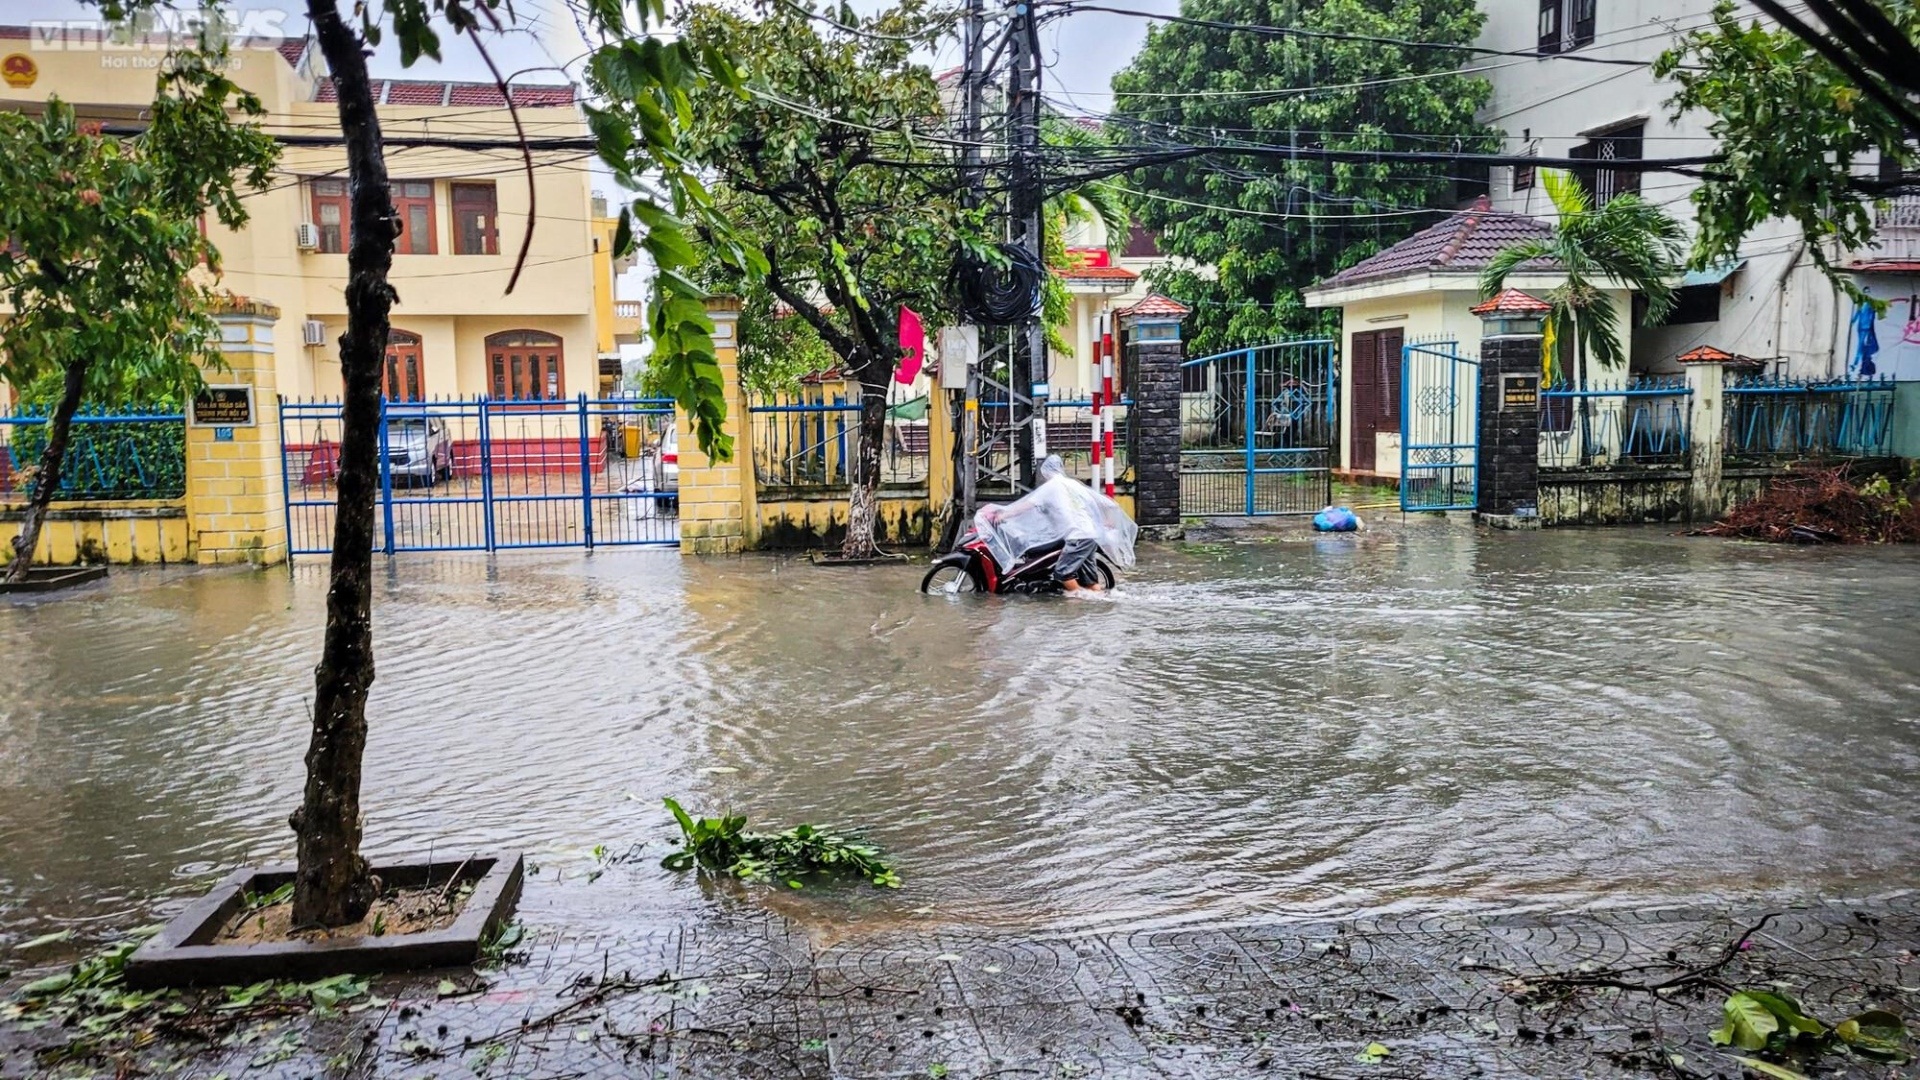 Khung cảnh tang thương, nước sông dâng ngập chợ và nhà dân, cây cối đổ sập, bật gốc tại Quảng Nam sau bão - Ảnh 7